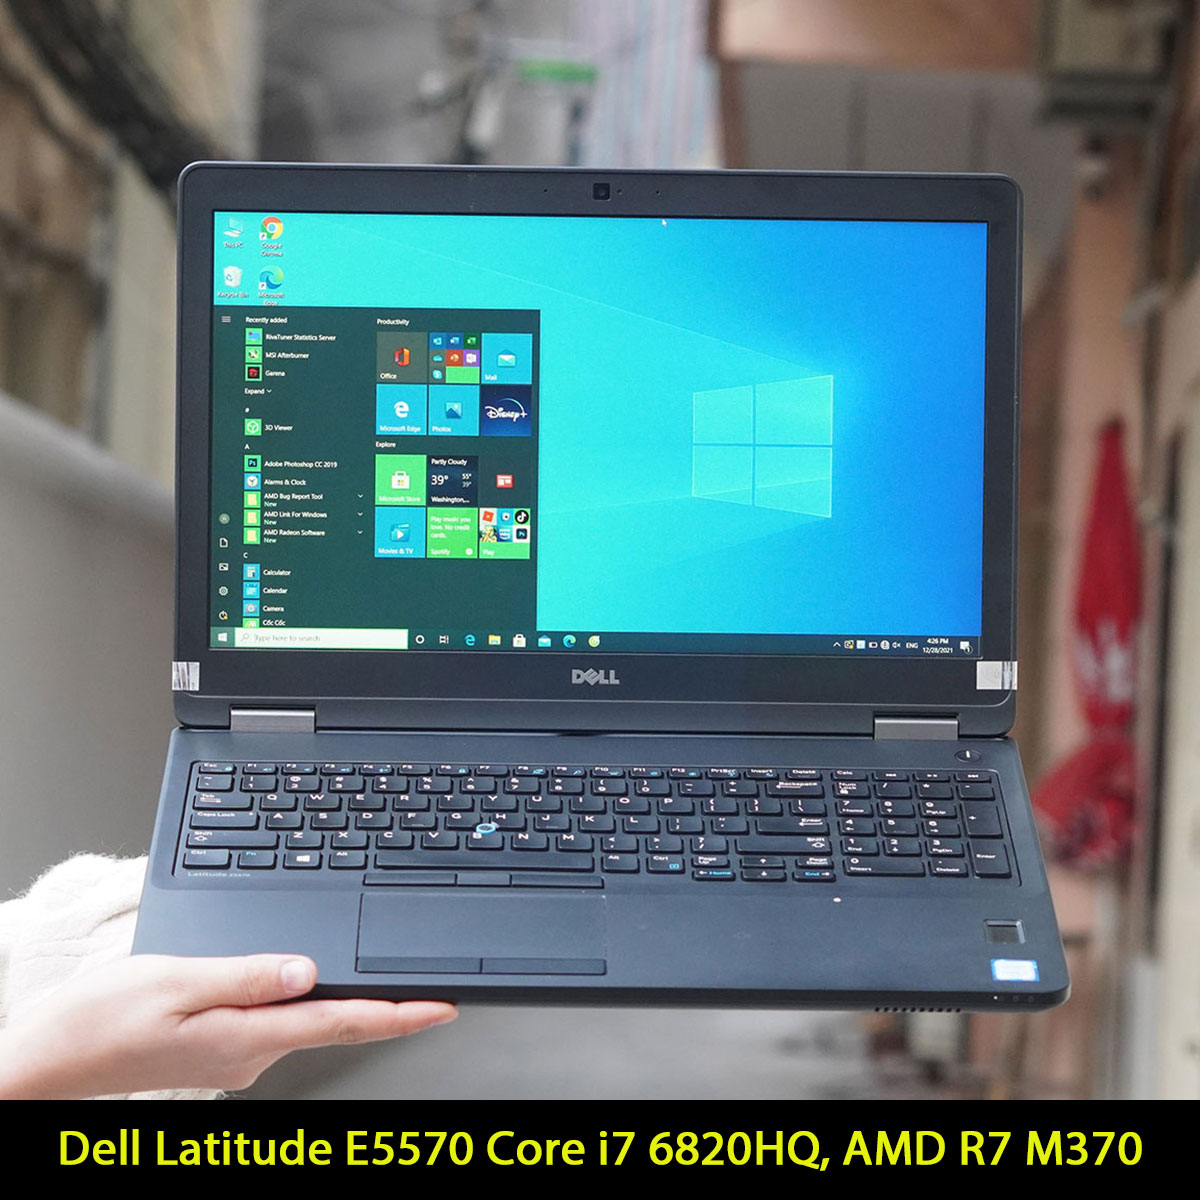 Dell Latitude E5570 Core i7 6820HQ, Ram 8GB, SSD 256GB, 15.6 Inch, HD Graphics 520